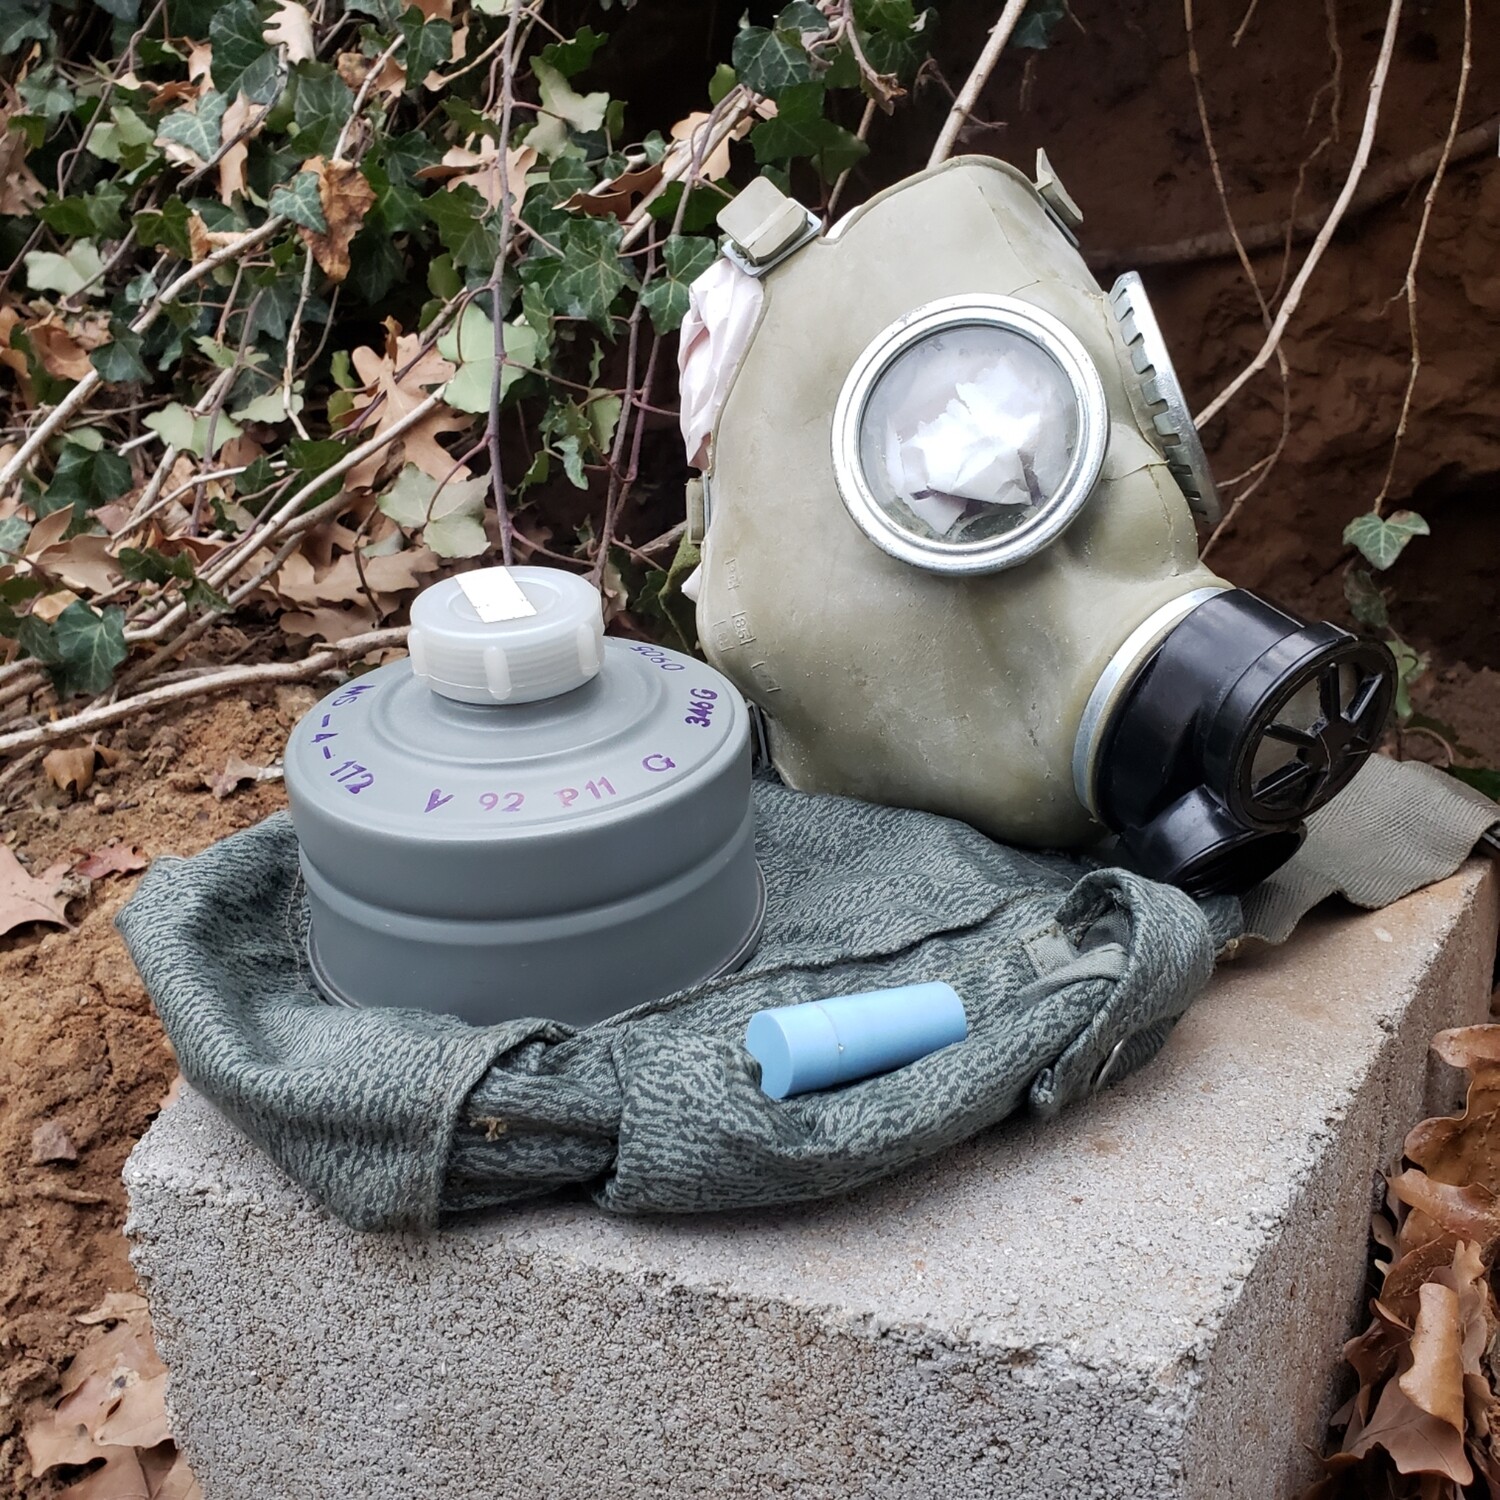 MC-1 gas mask